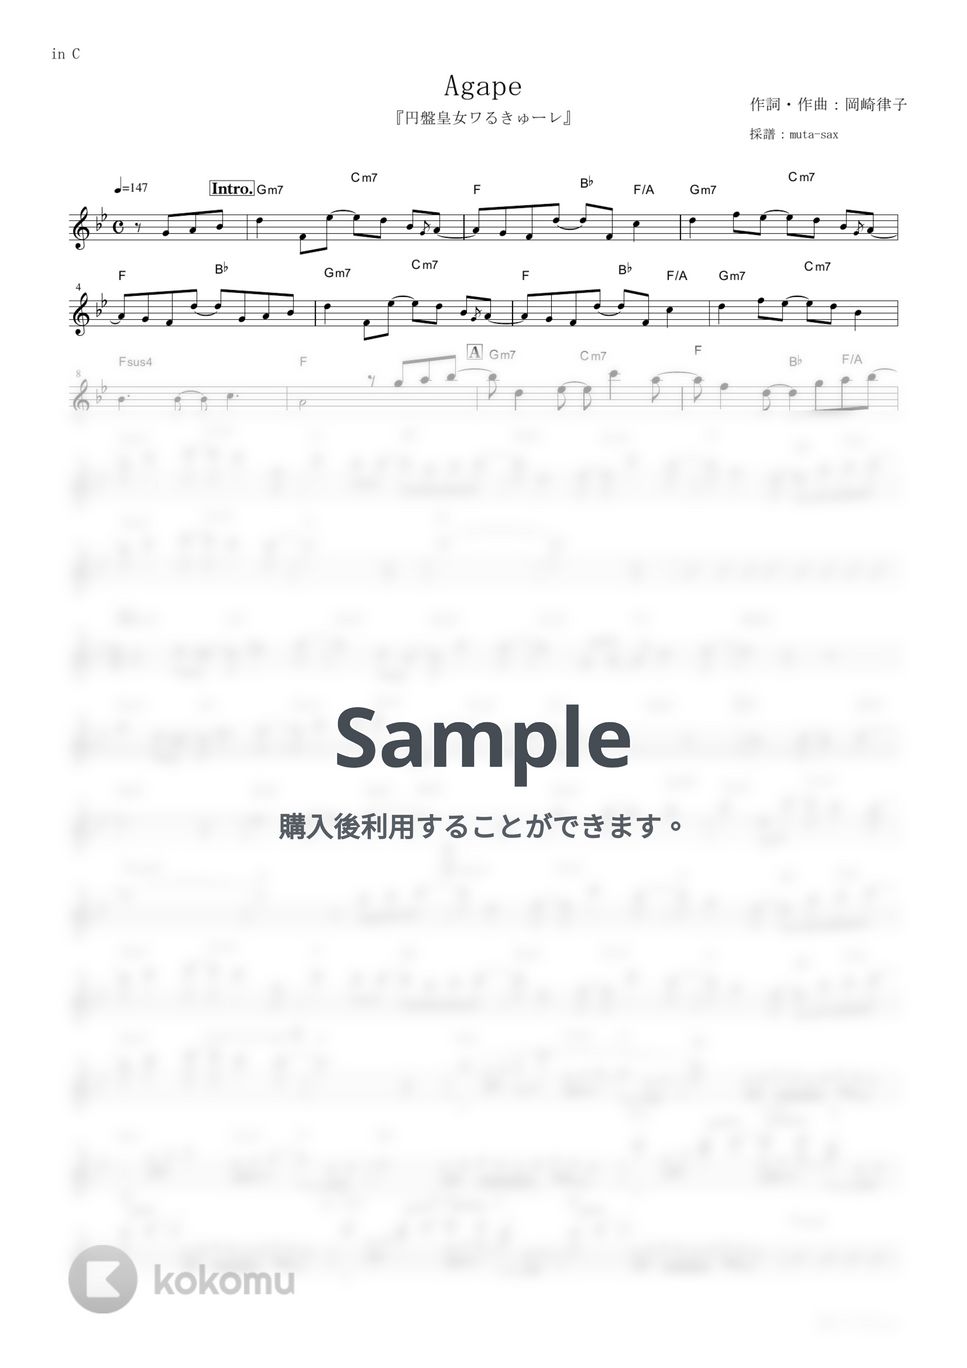 メロキュア - Agape (『円盤皇女ワるきゅーレ』 / in C) by muta-sax